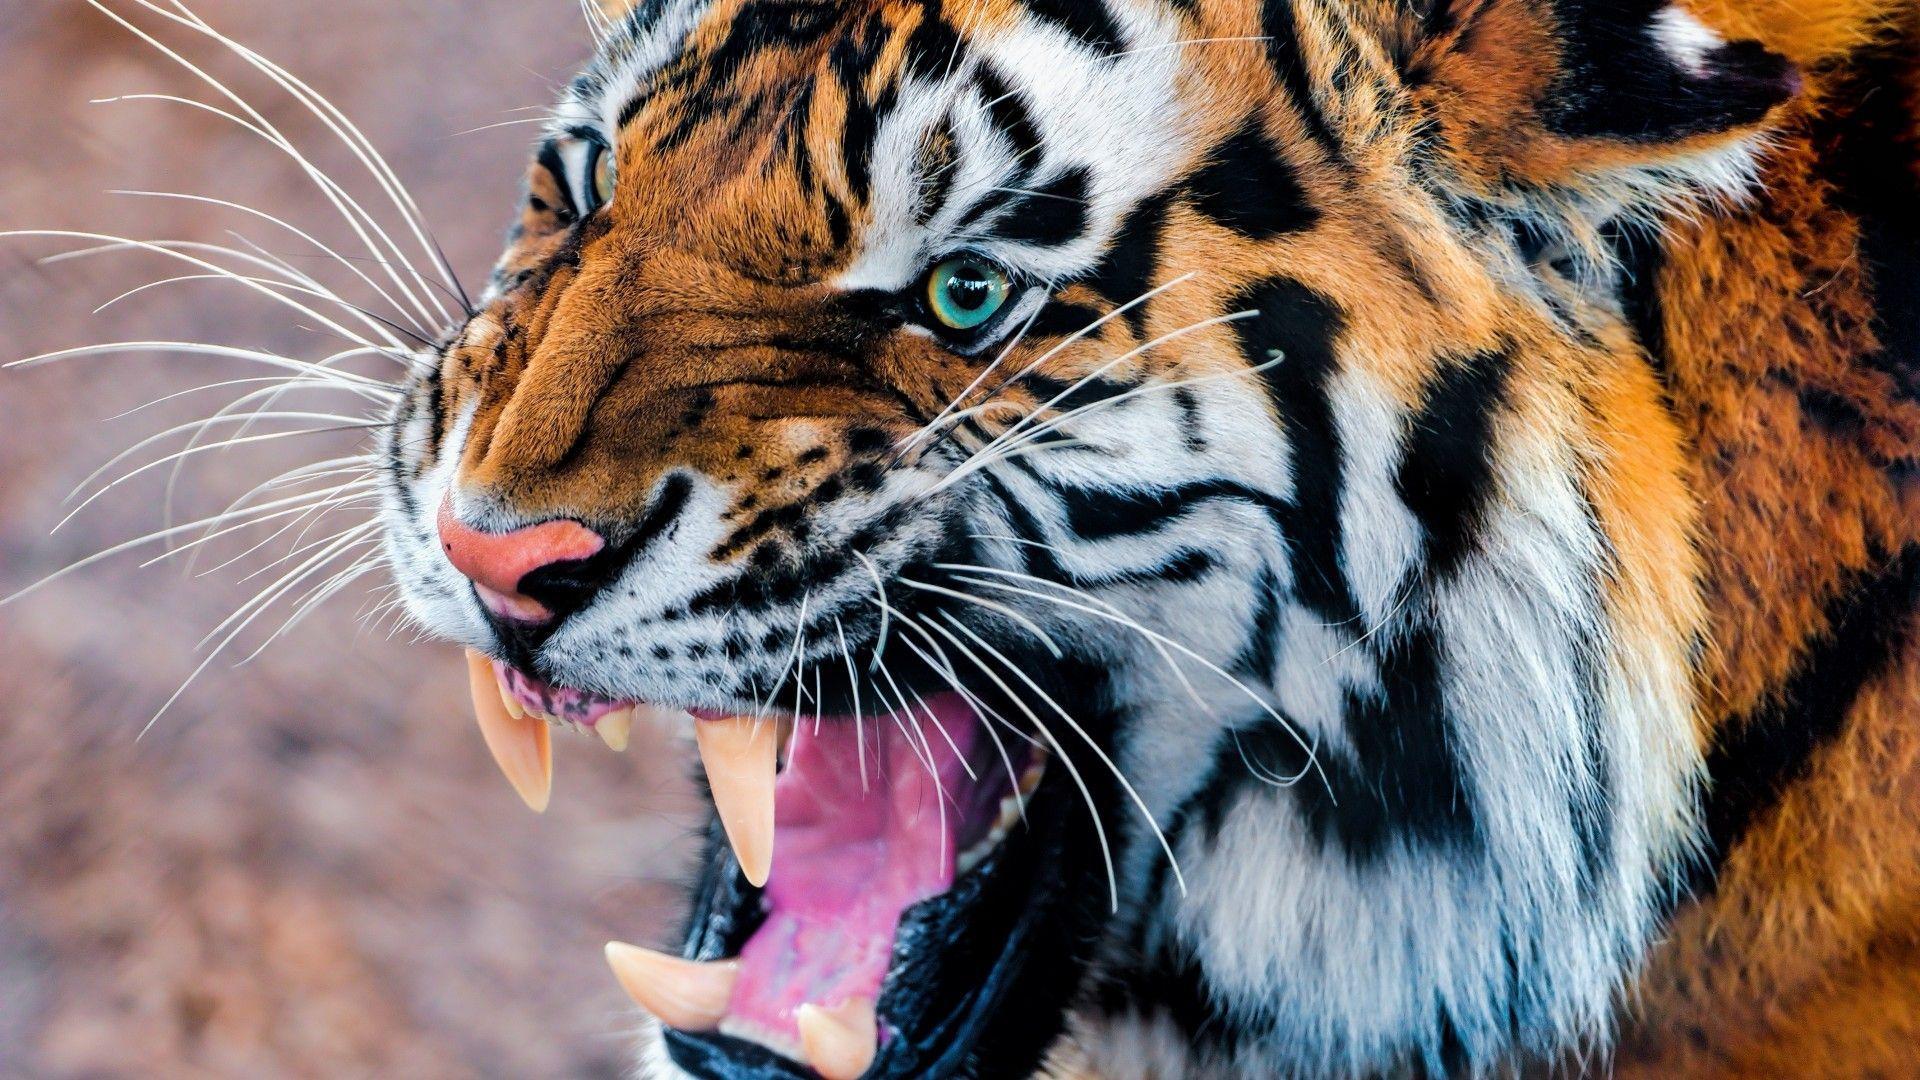 Tiger Wallpaper, Animals / Wild: Tiger, snarling, eyes, fur. Wild